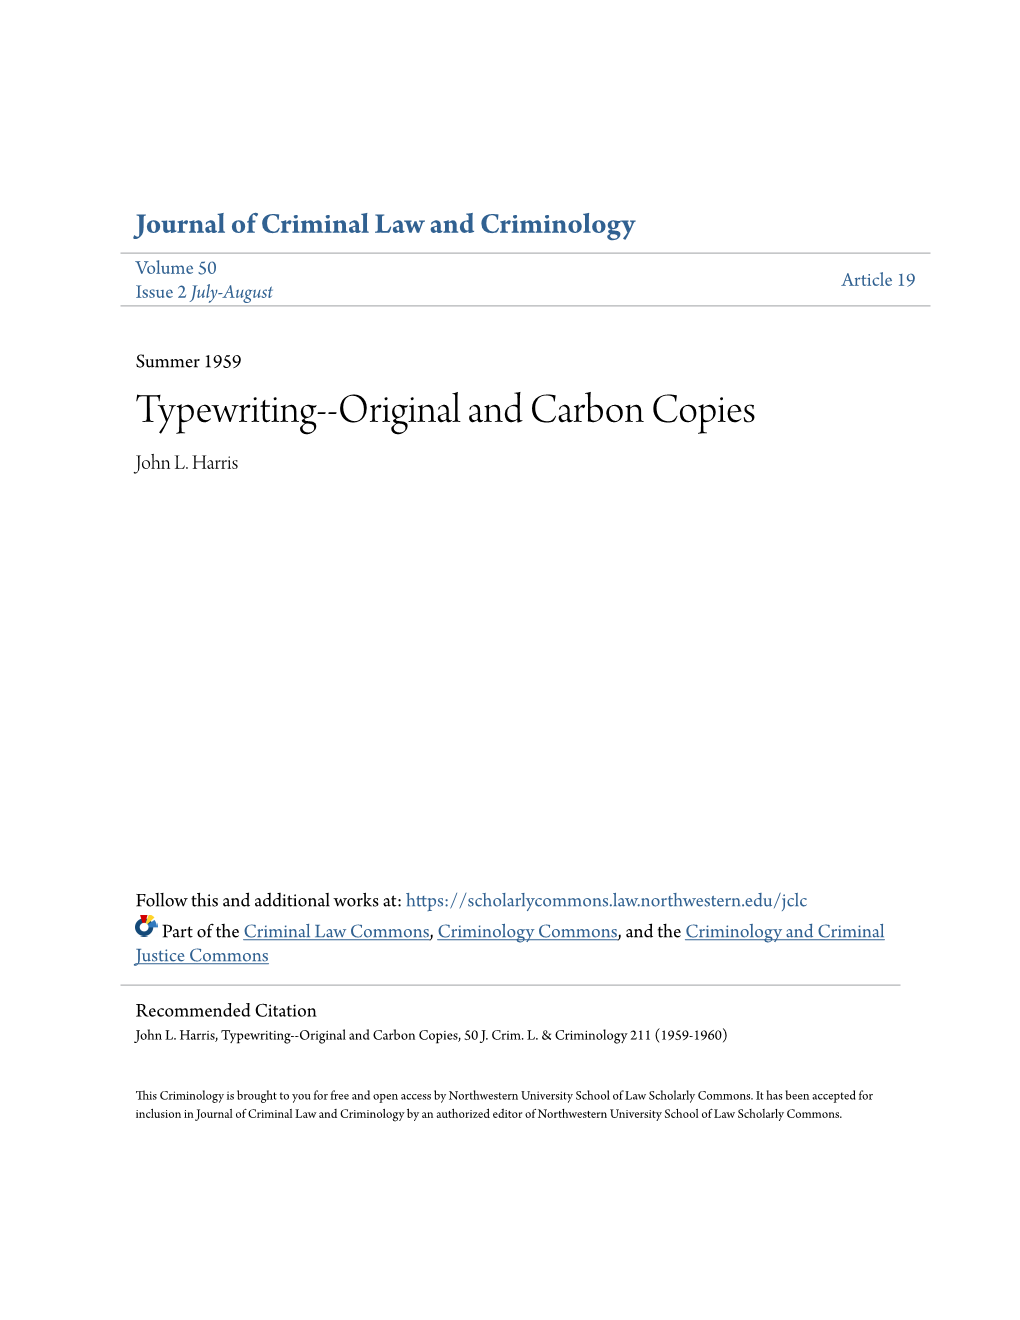 Typewriting--Original and Carbon Copies John L